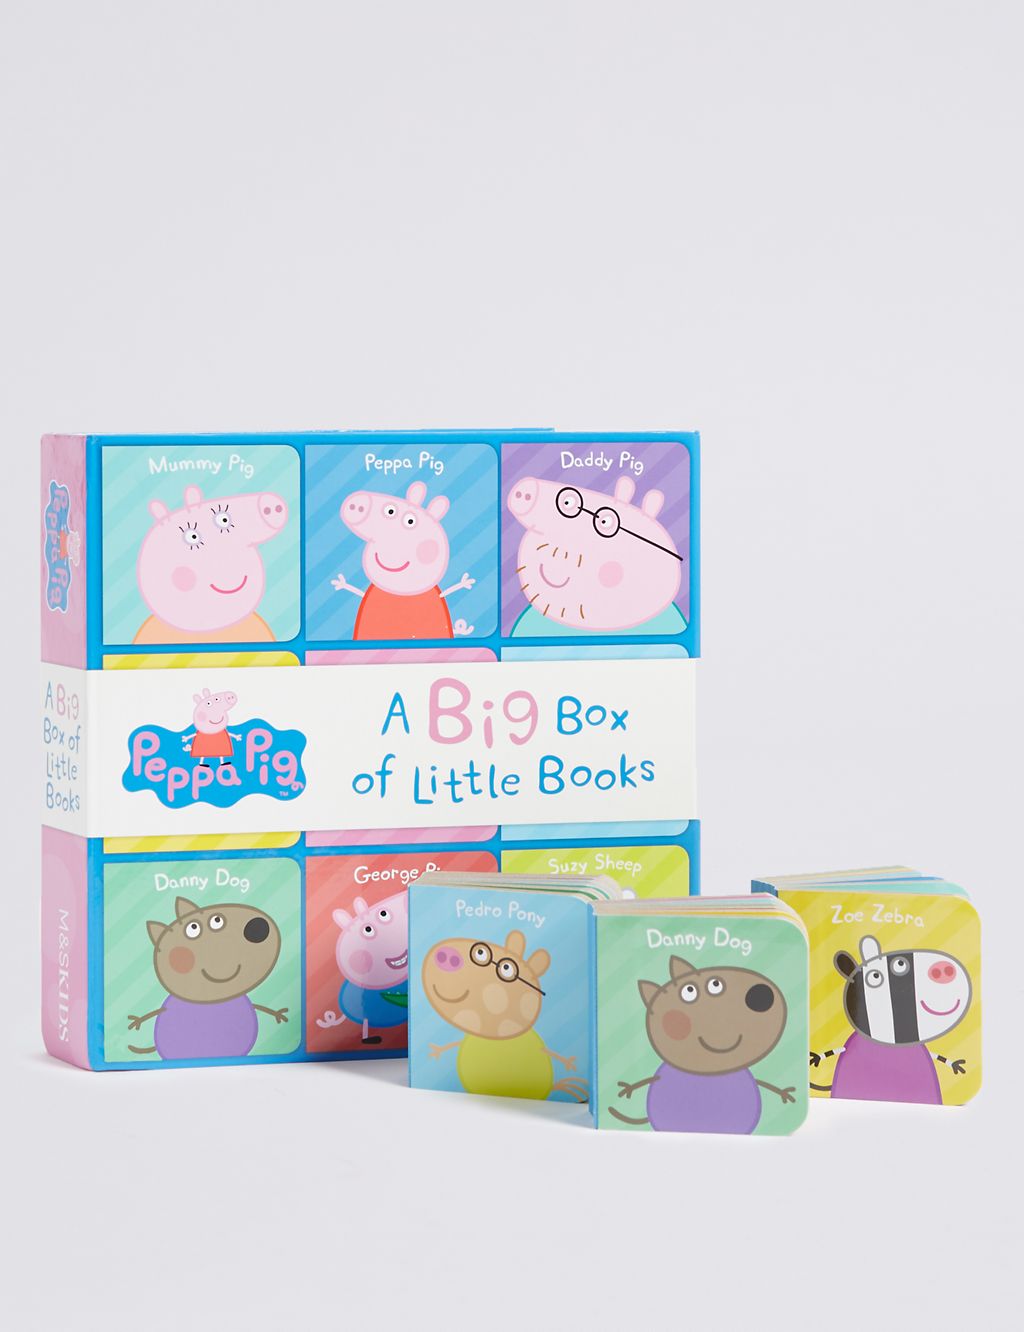 Peppa Pig™ Big Box of Little Books 2 of 3